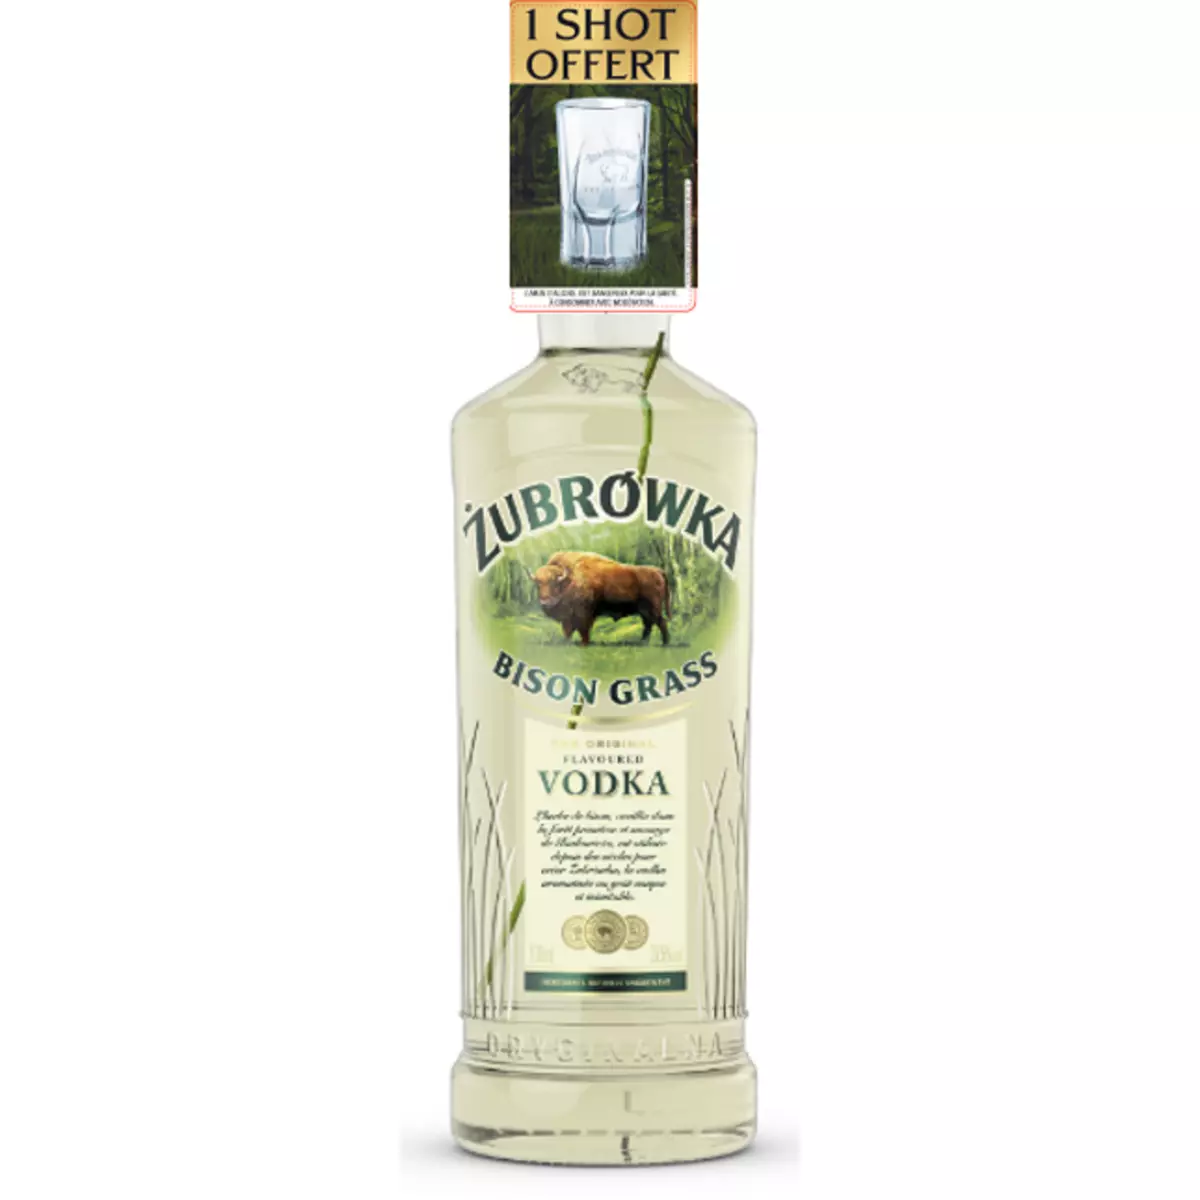 ZUBROWKA Vodka bison grass 37,5% avec 1 verre 70cl